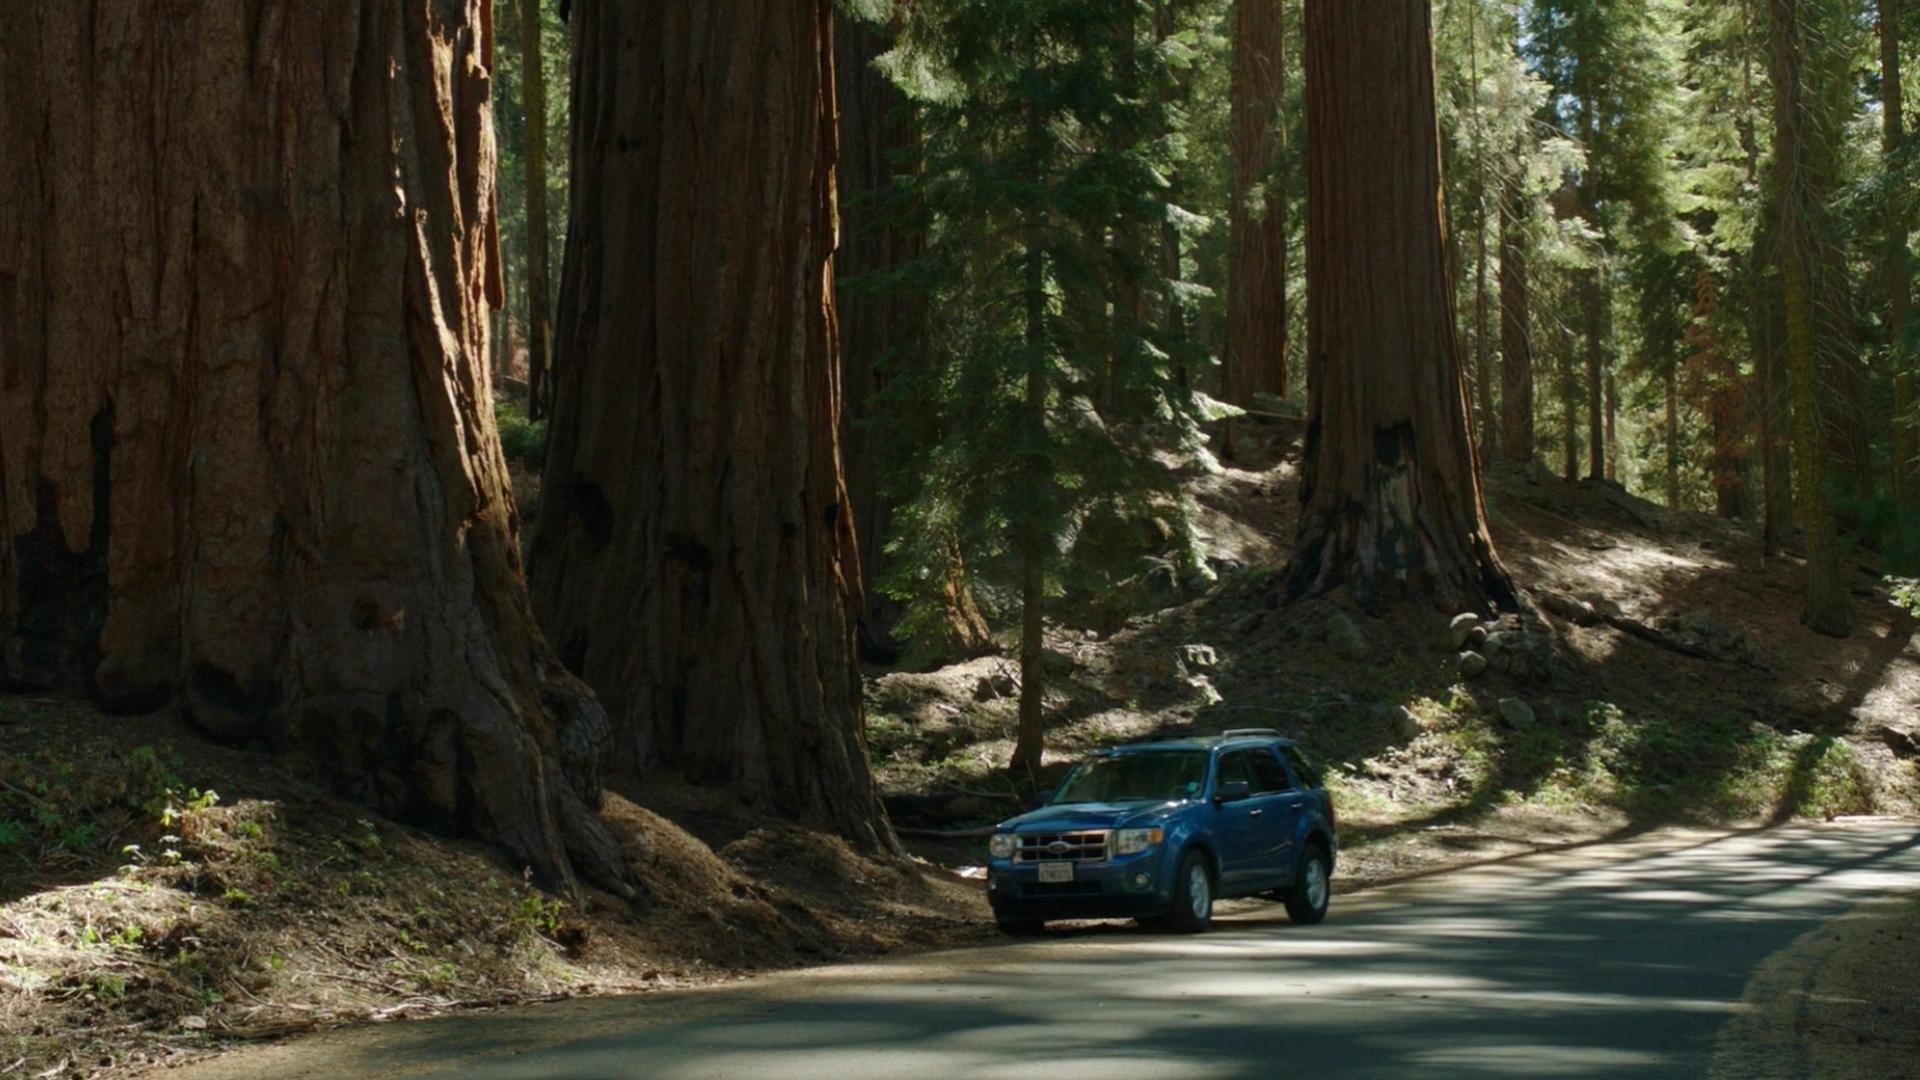 Sequoia backdrop